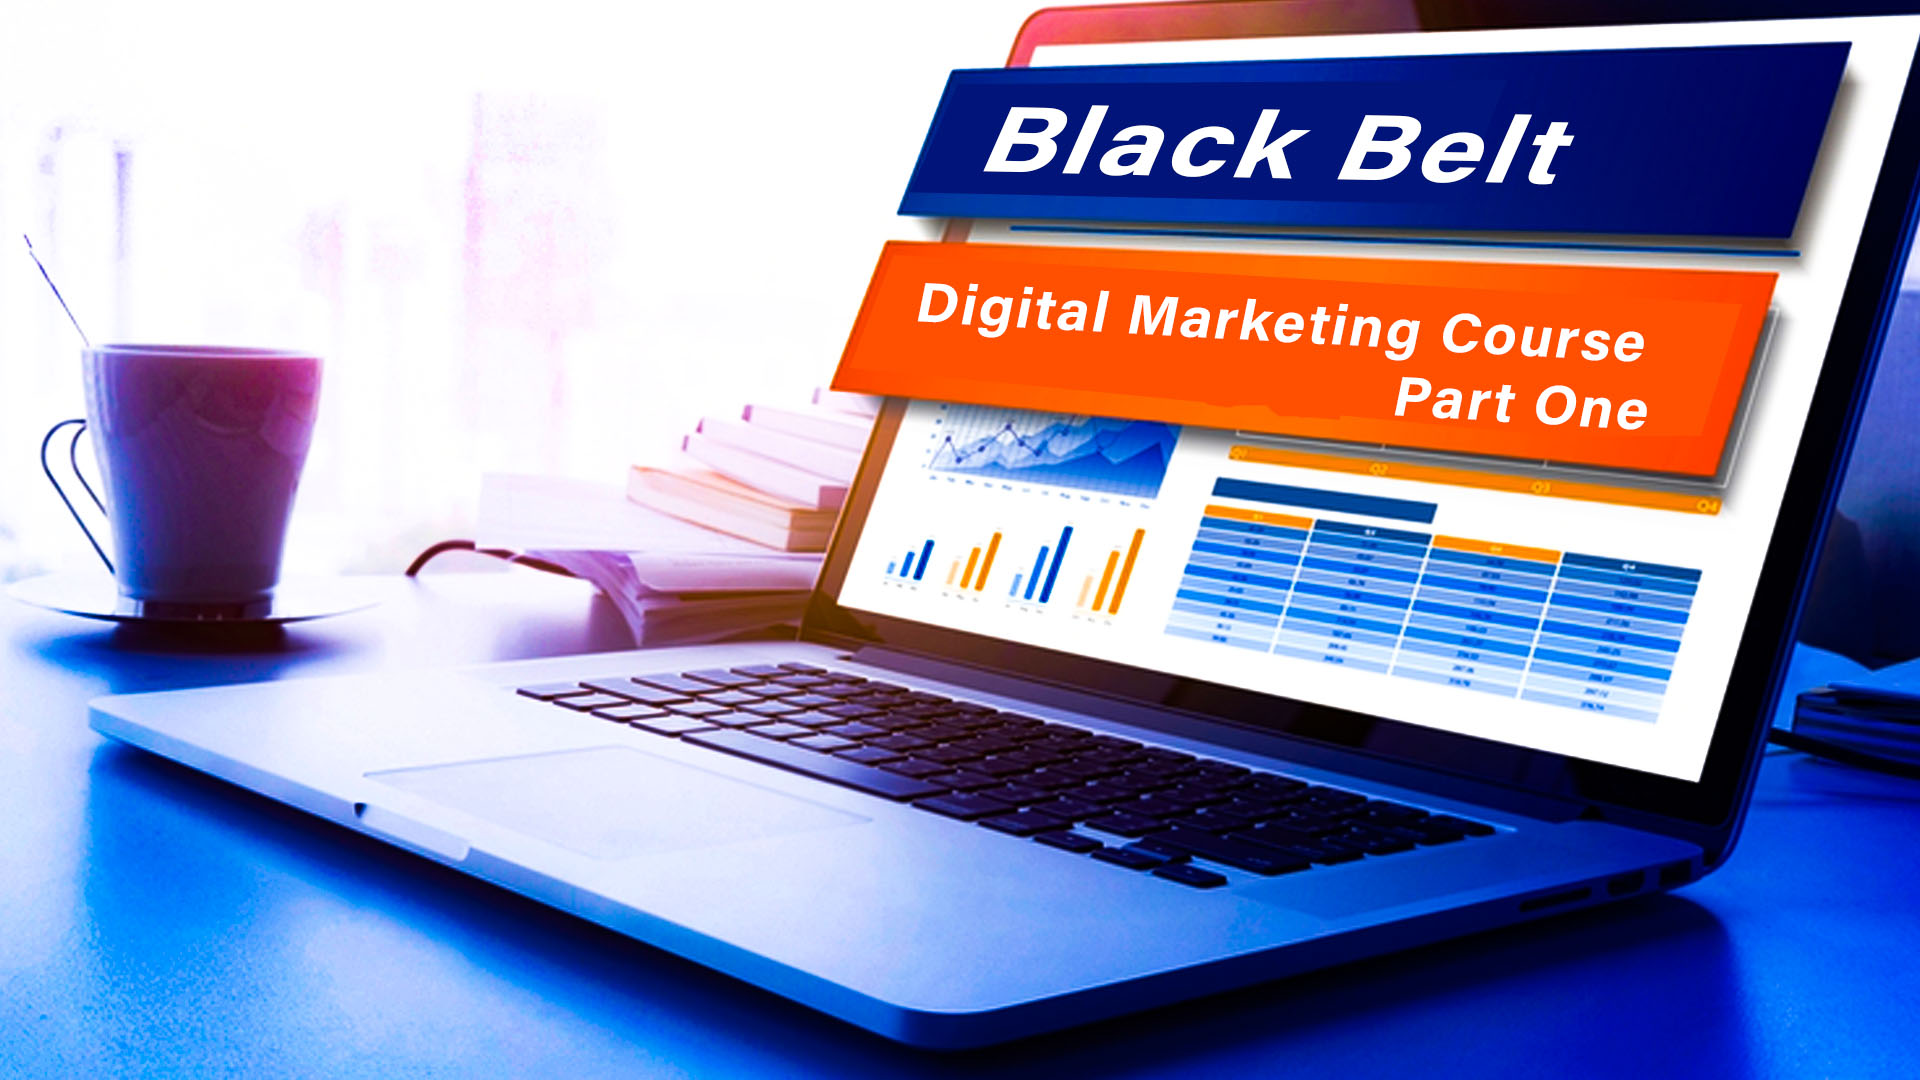 Black Belt Digital Marketing Course